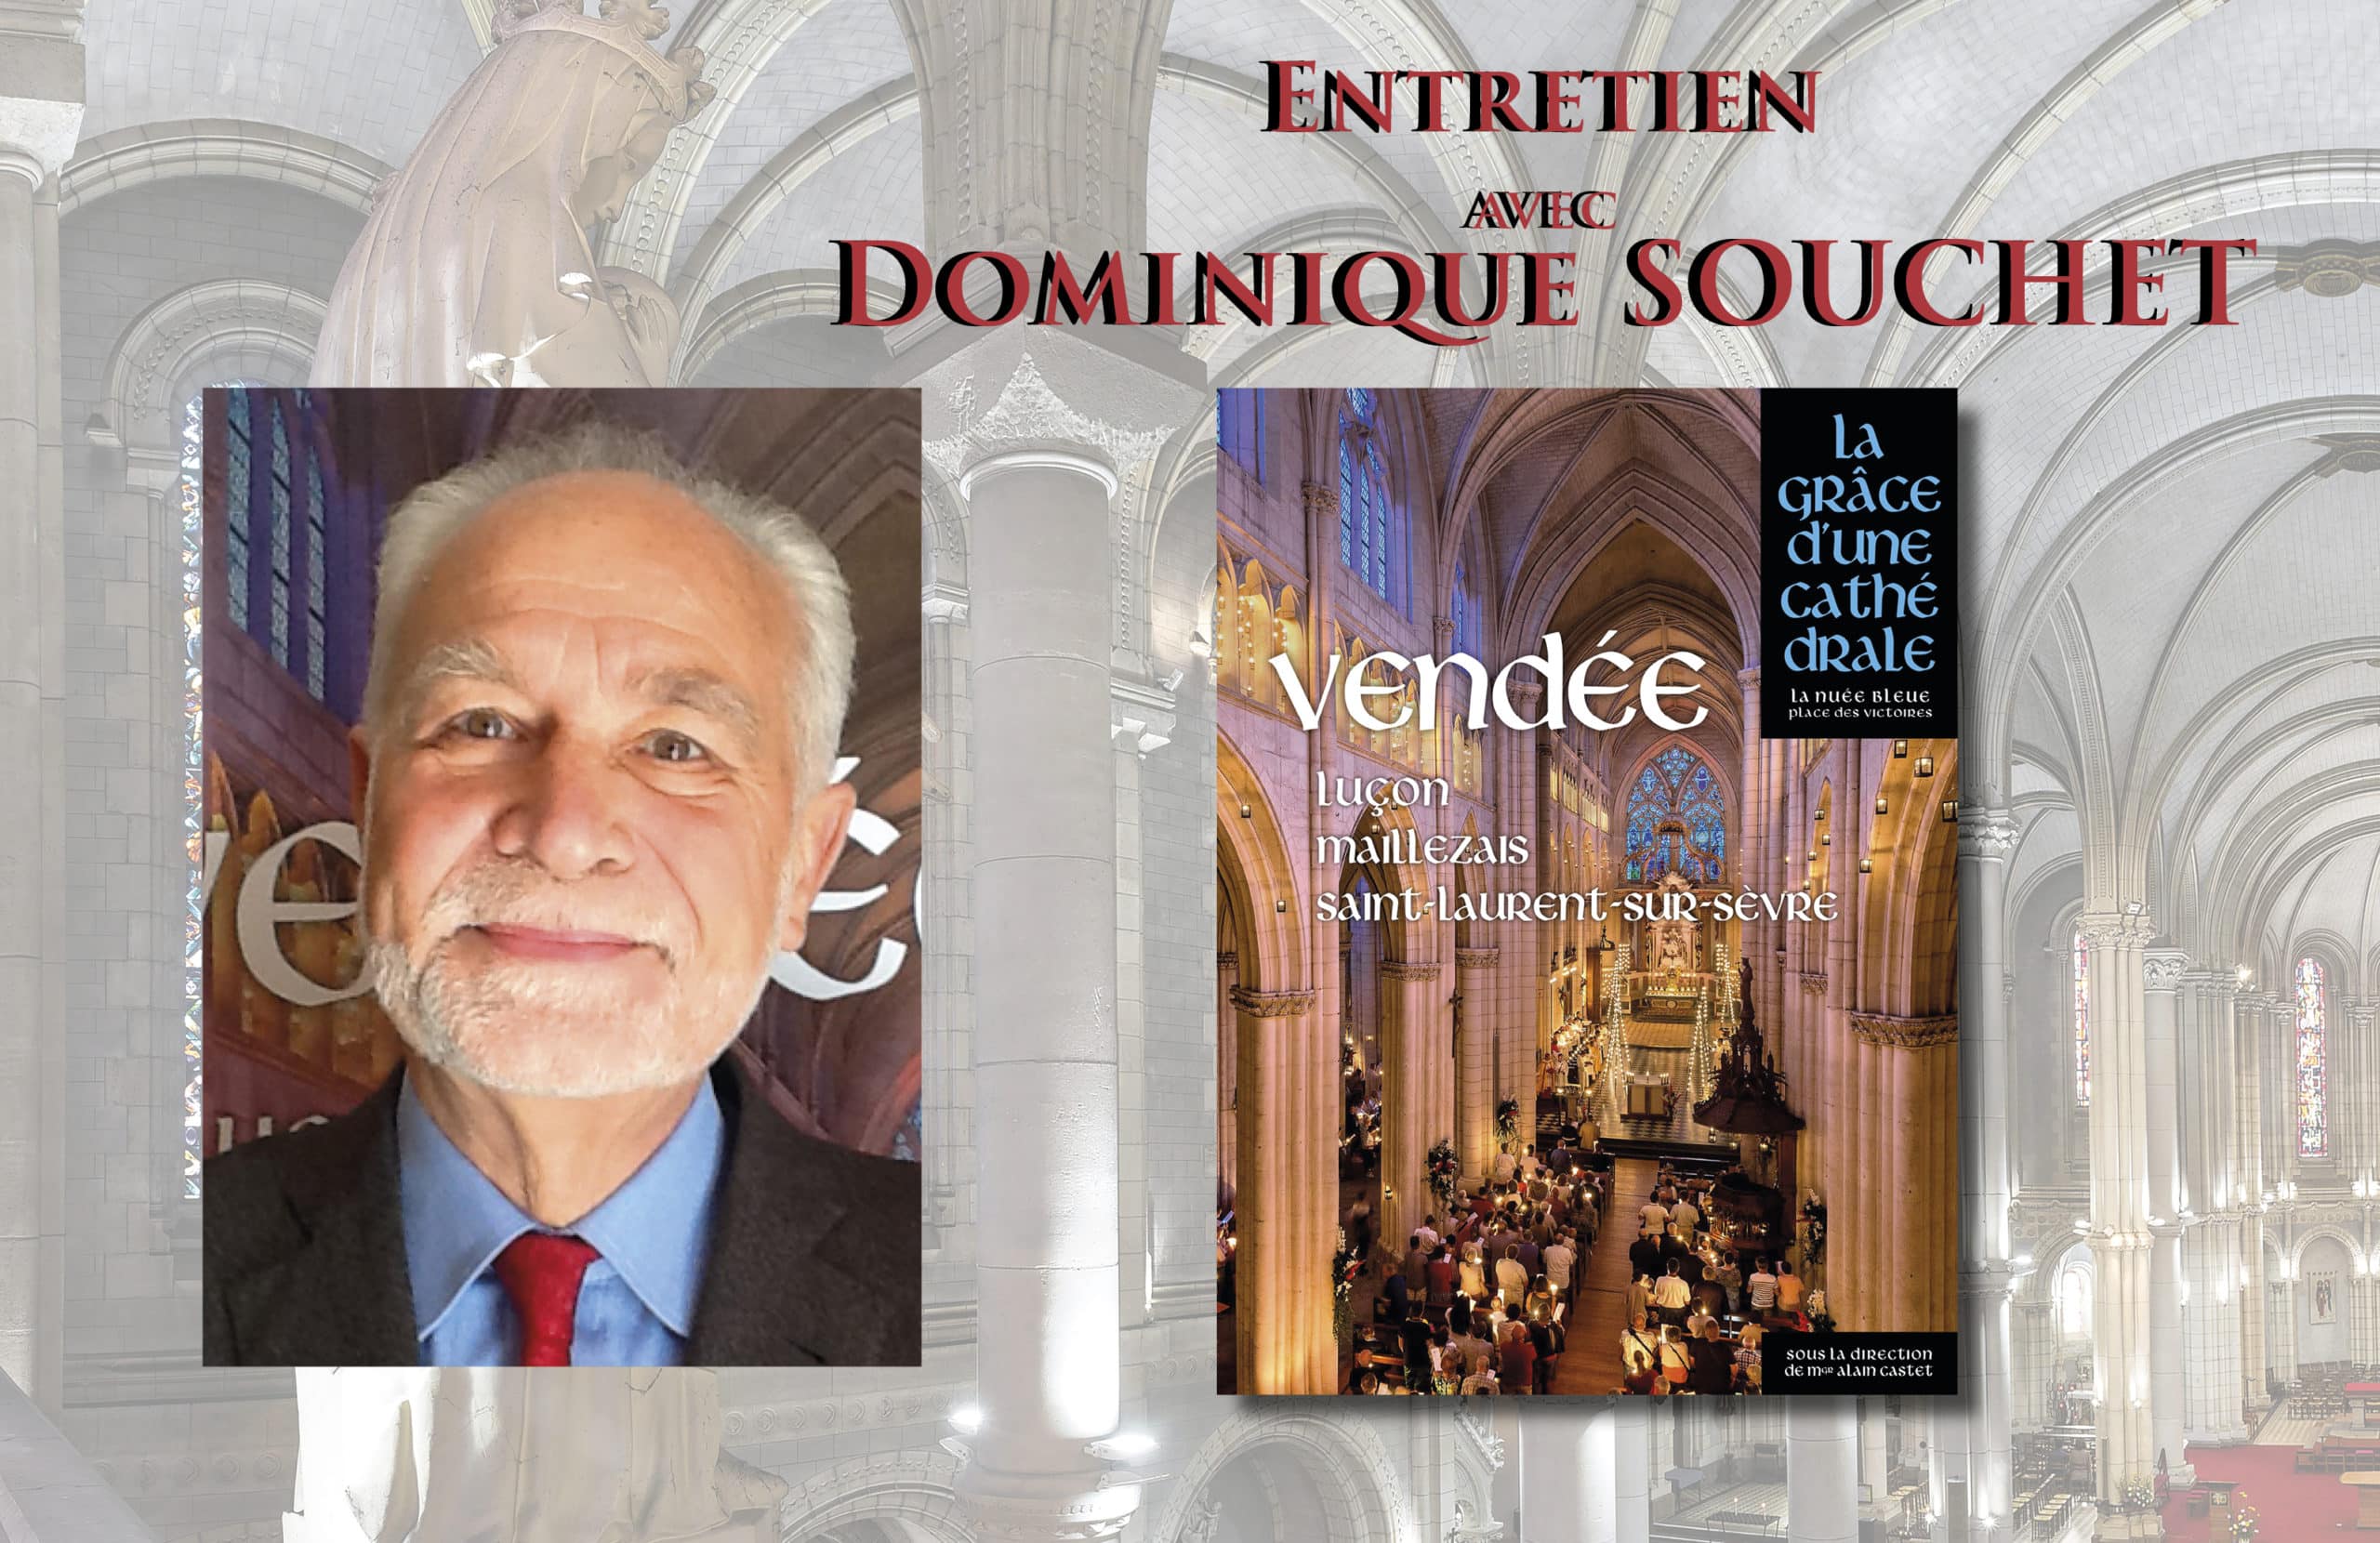 Entretien avec Dominique Souchet : La grâce d’une cathédrale Vendée